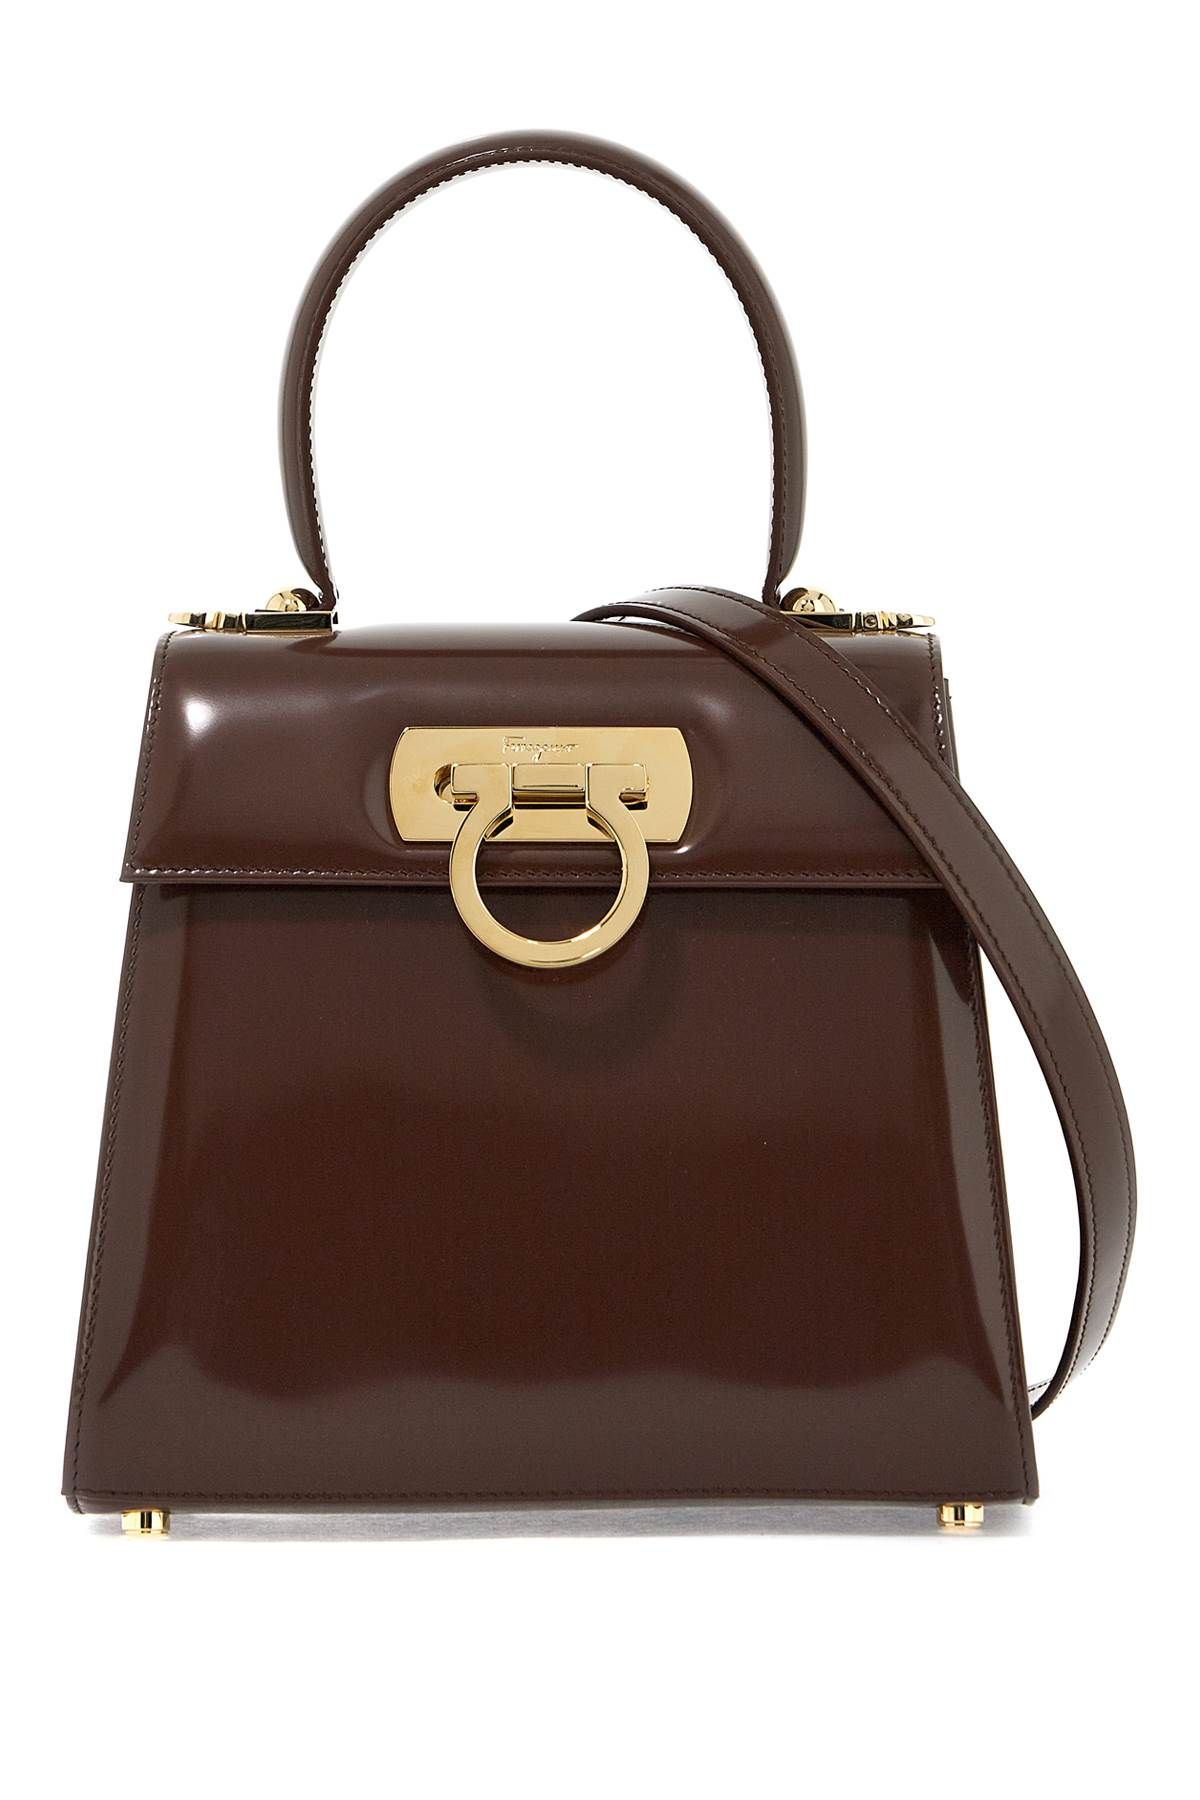 Ferragamo Iconic Top Handle Handbag (s) In Brown